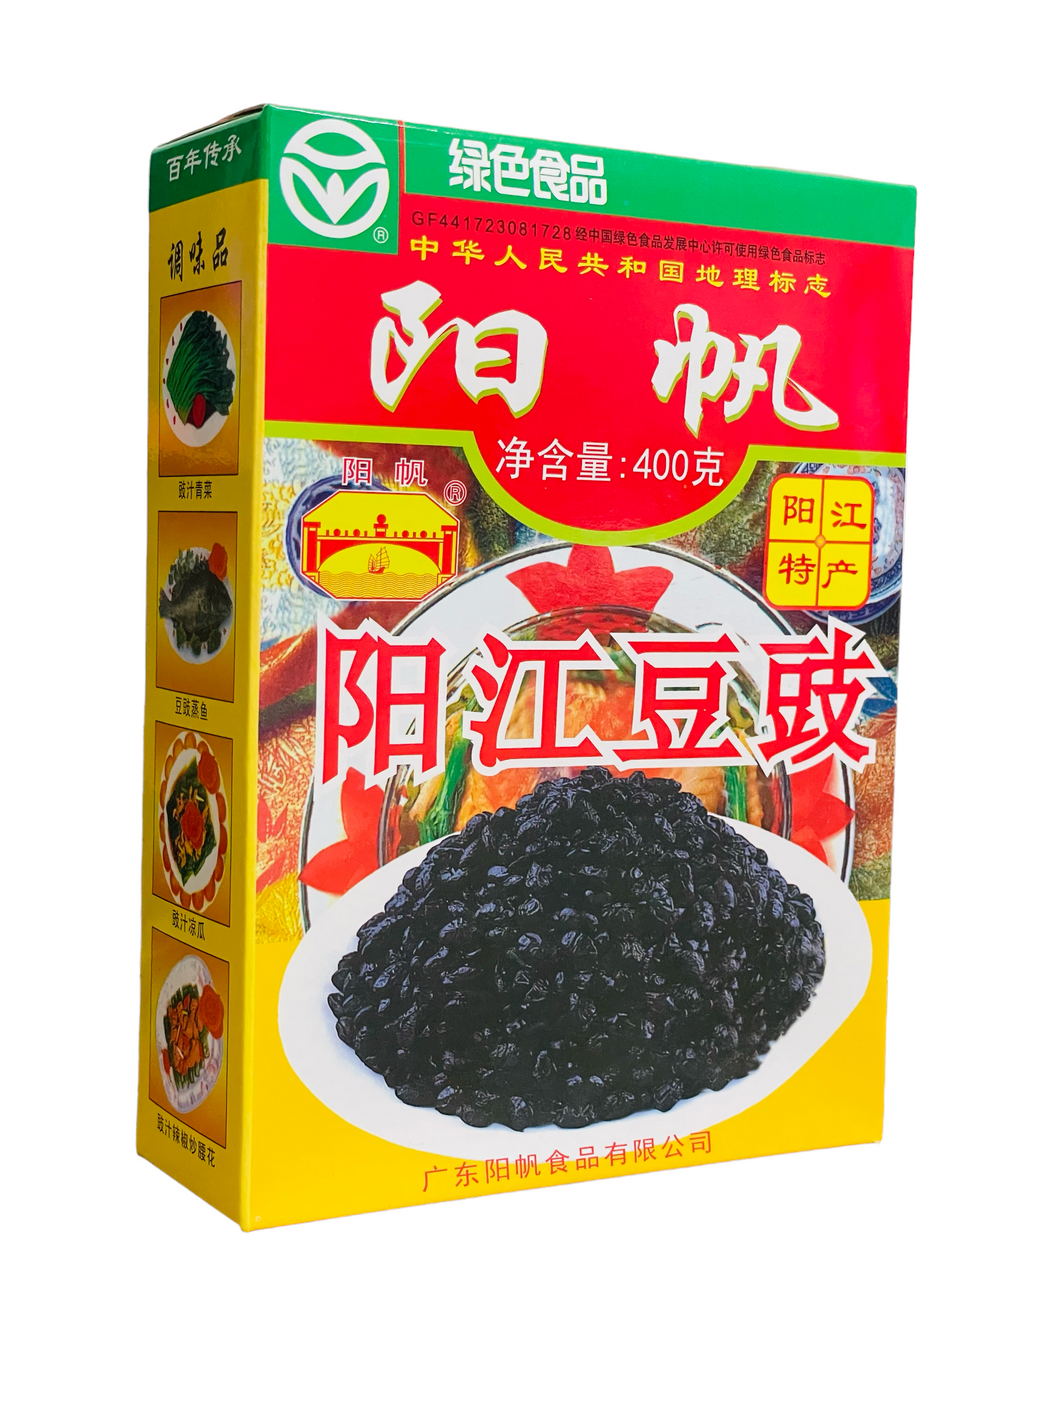 YF Fermented Soy Beans 400g 阳江豆豉